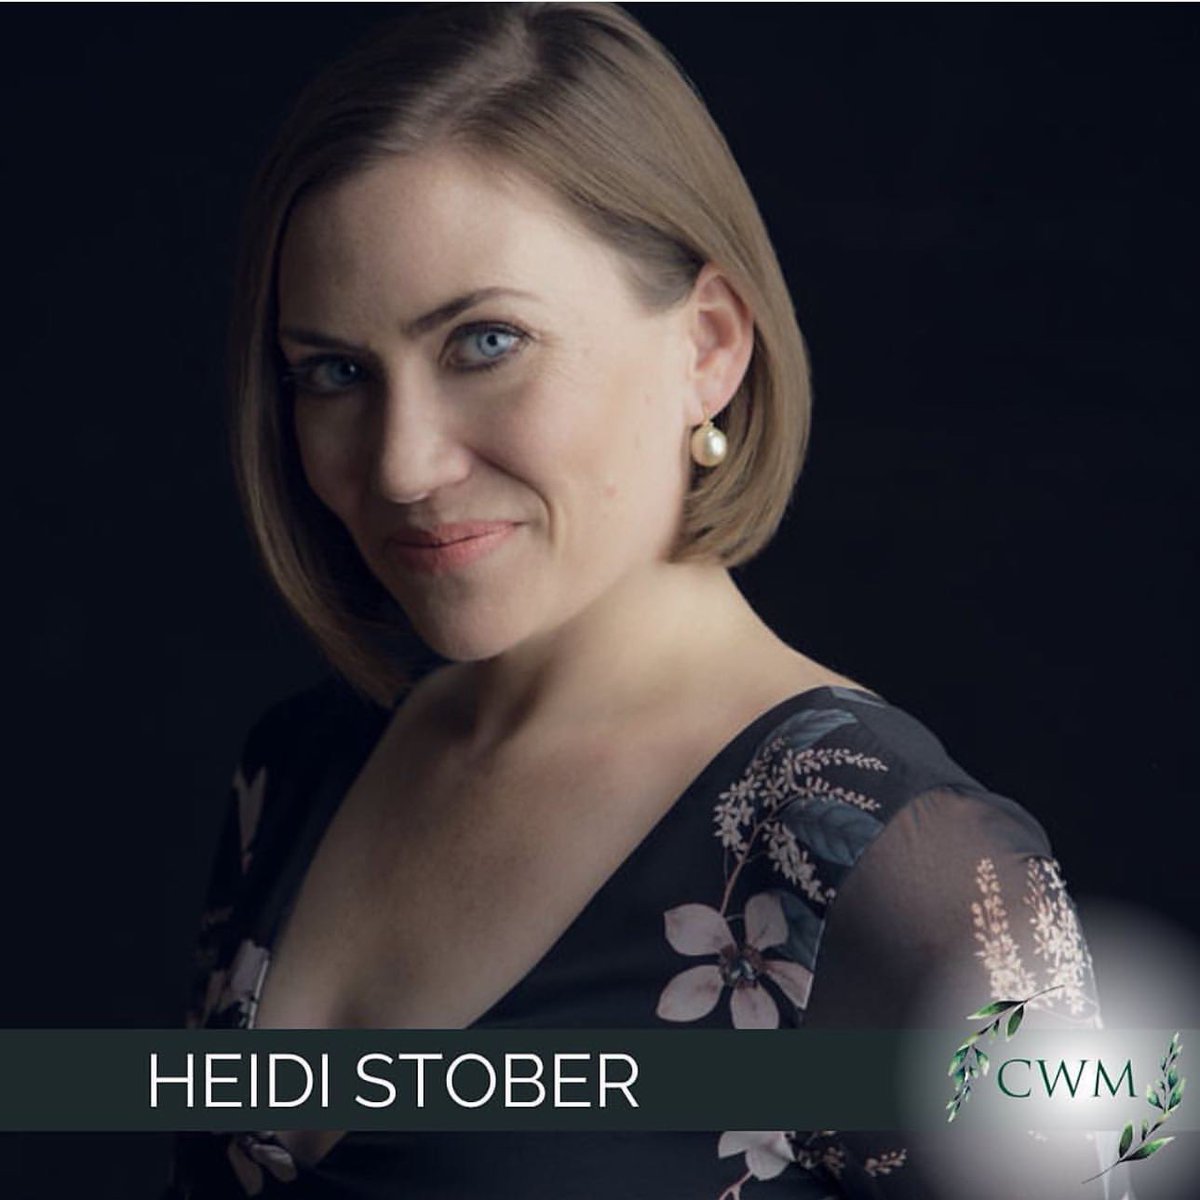 Heidi Stober returns to Pamina in DIE ZAUBERFLÖTE tonight at Semperoper Dresden! @HeidiStober @semperoper